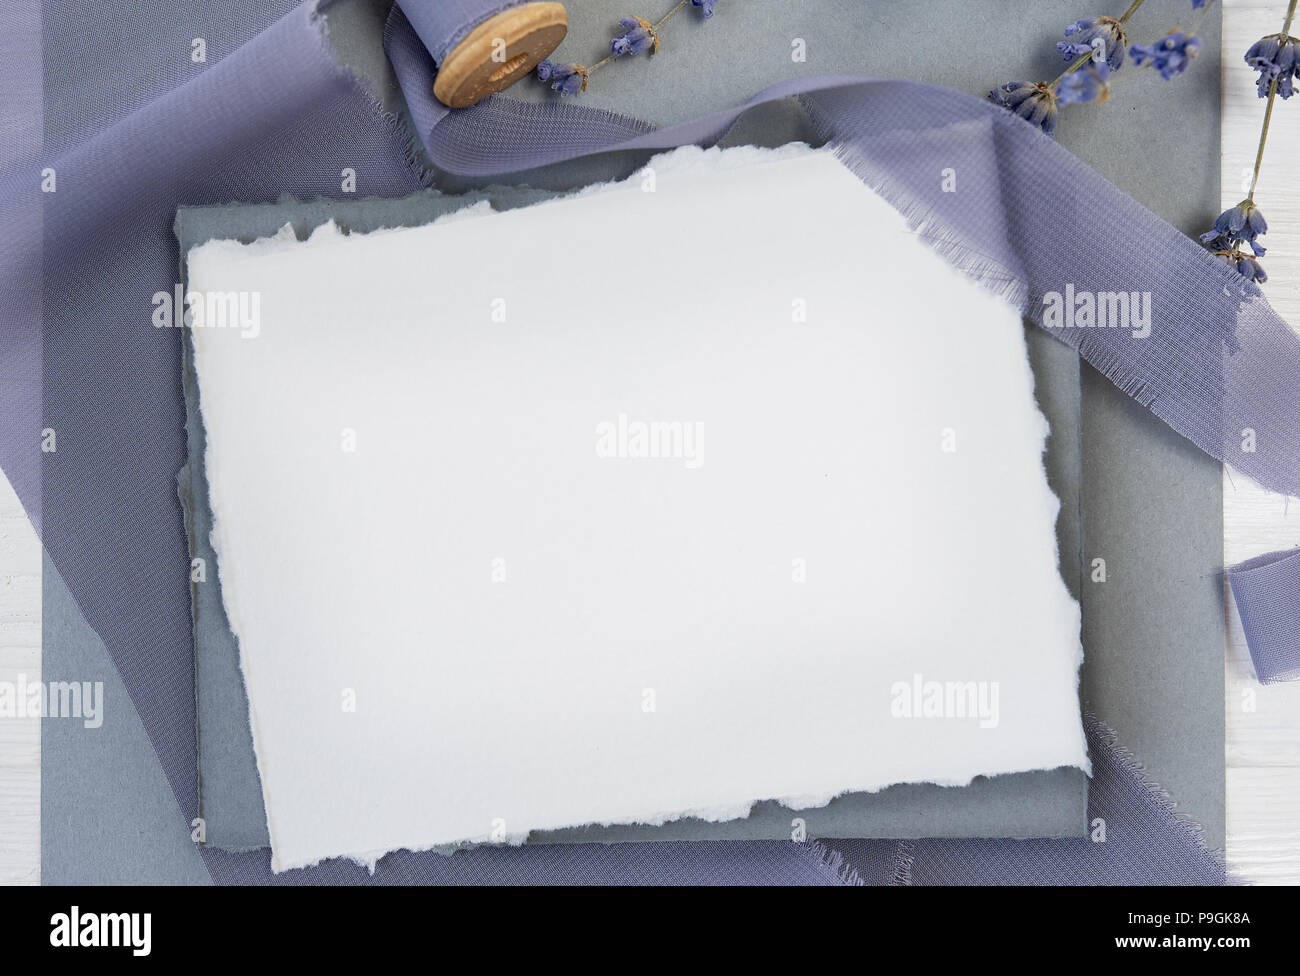 Carte de voeux vierge blanc ruban sur un fond de toile bleue avec des fleurs de lavande sur un fond blanc. Immersive avec enveloppe et carte vierge avec de l'espace pour votre texte. Mise à plat. Vue d'en haut Banque D'Images